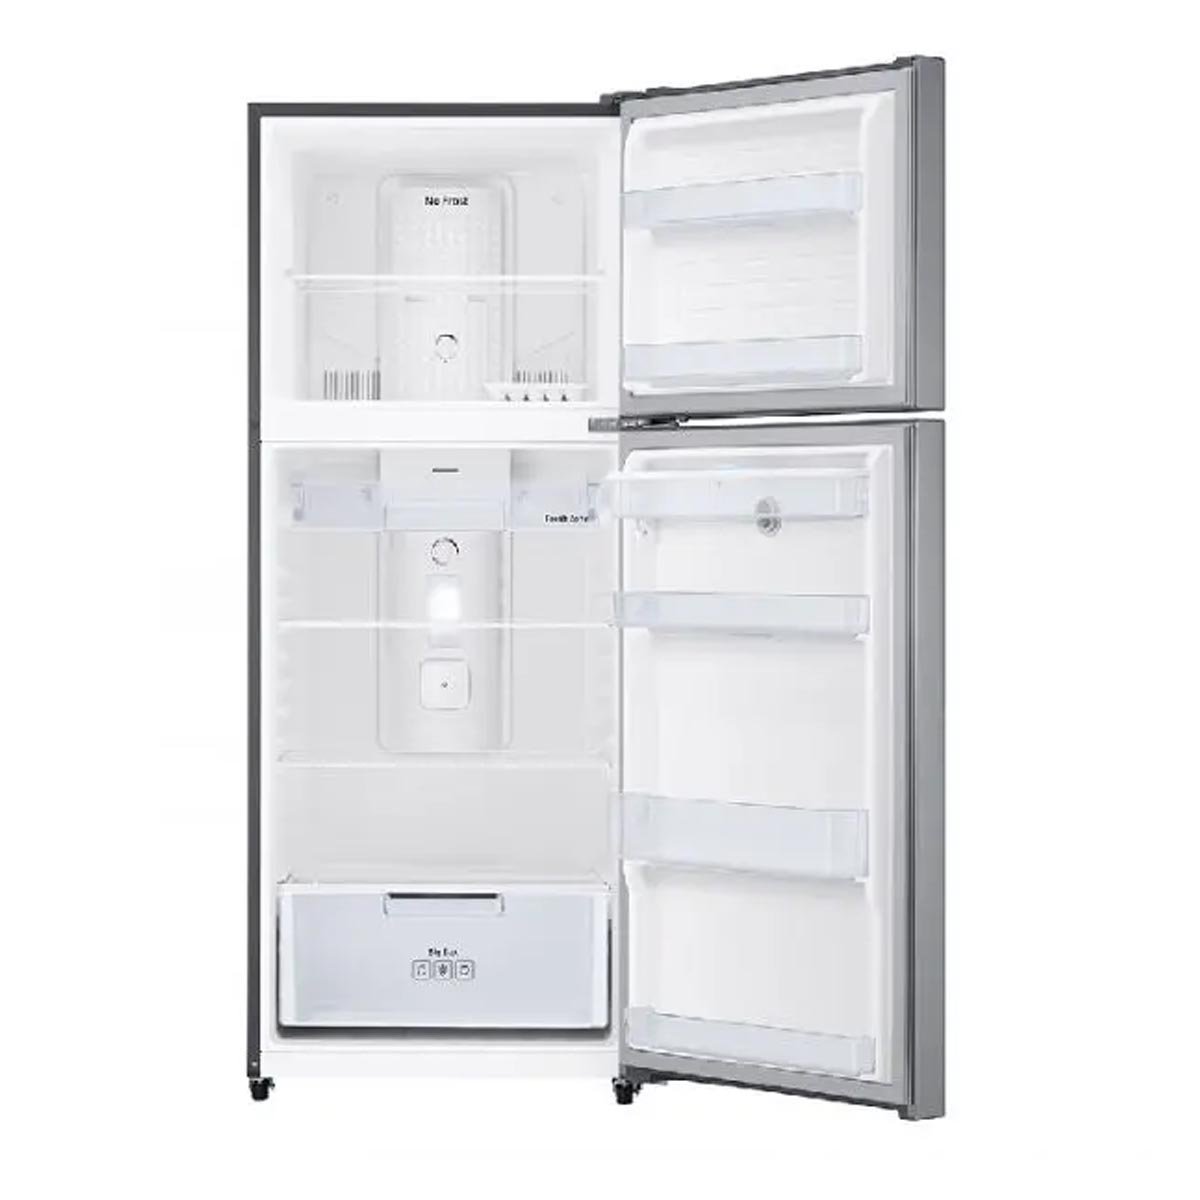 Refrigerador Top Mount 2 Puertas 16 P Silver Samsung